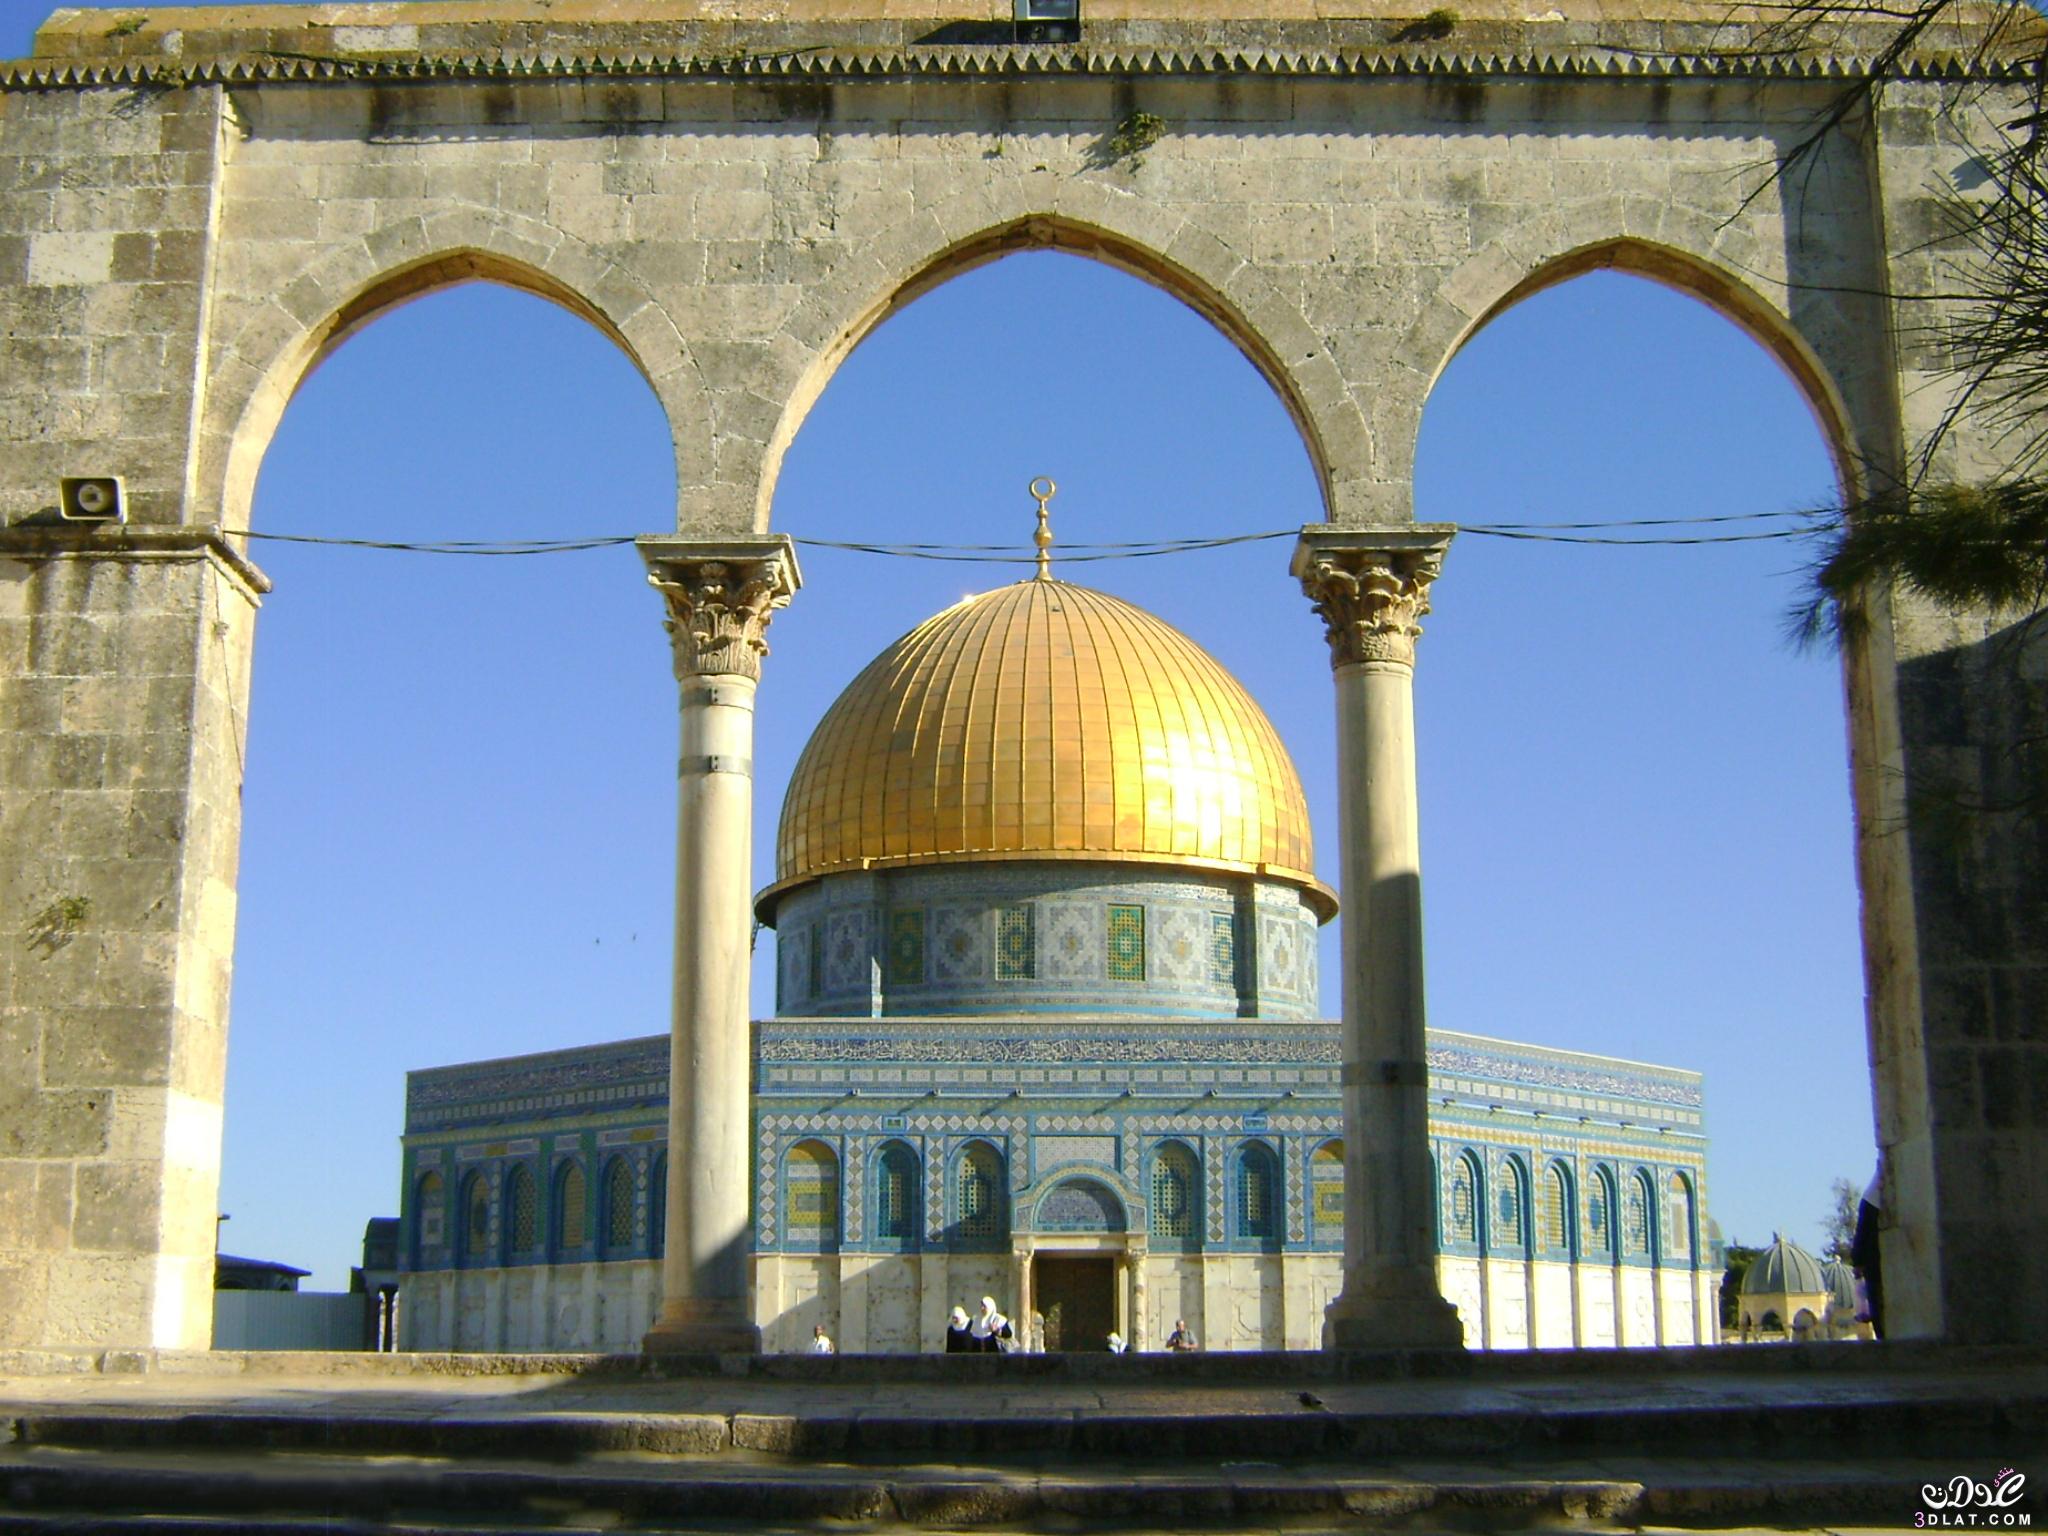 مسجد قبة الصخرة, معلومات تهمك عن المسجد, بالصور مسجد قبة الصخرة بفلسطين